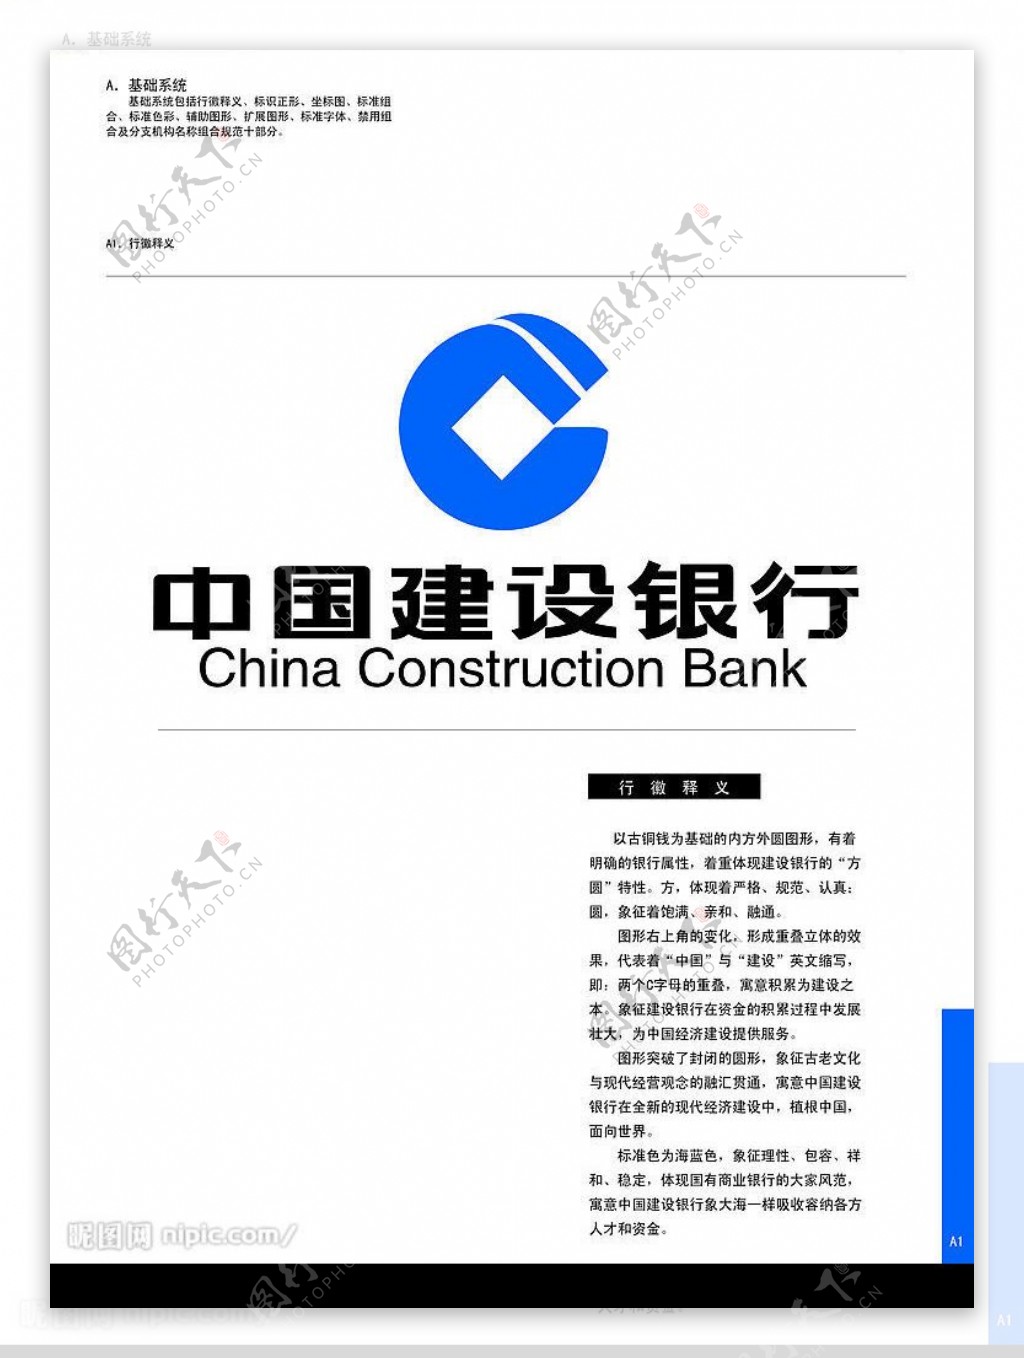 全套中国建设银行图片